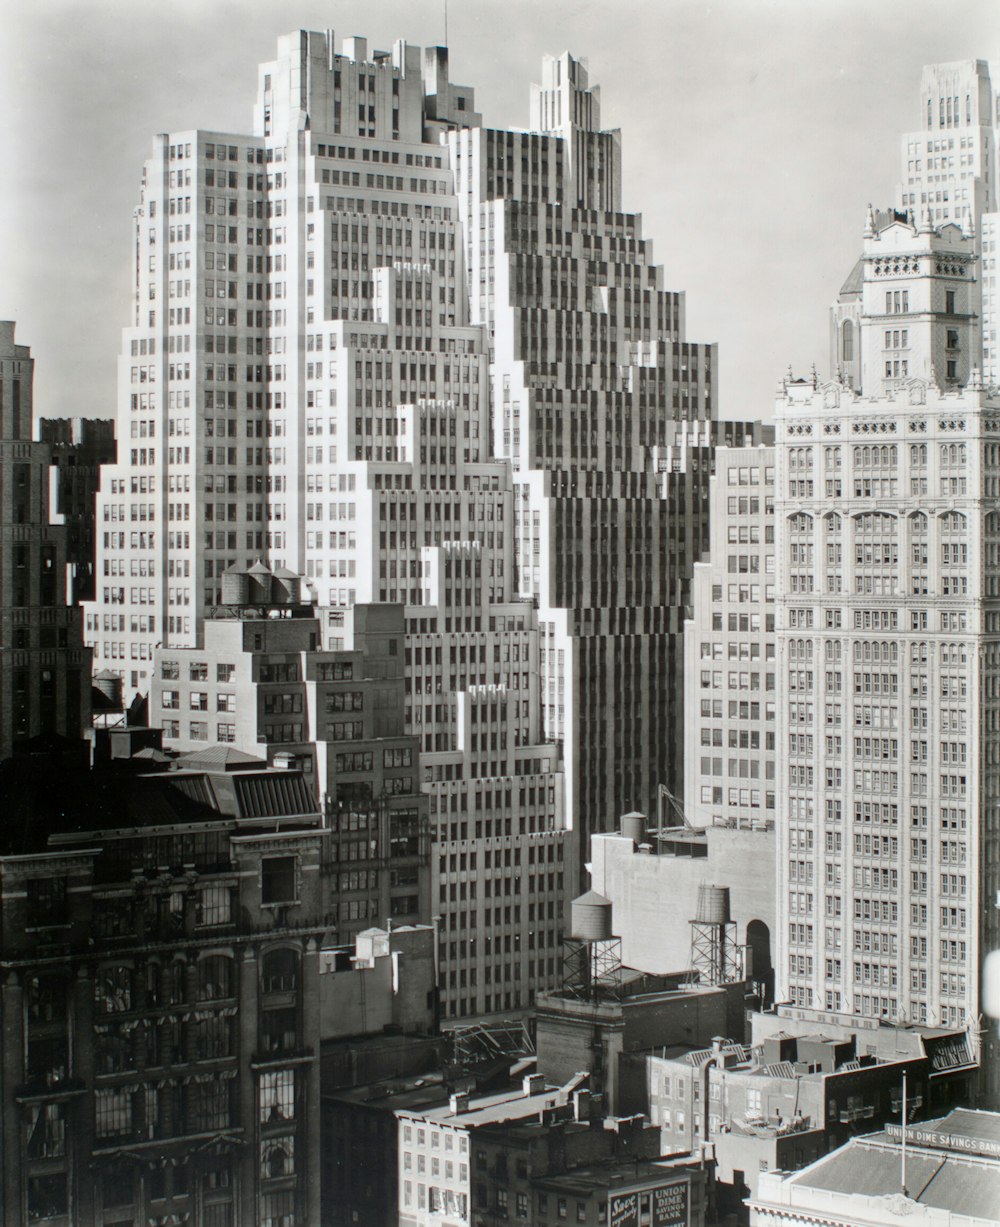 Foto in scala di grigi di edifici della città